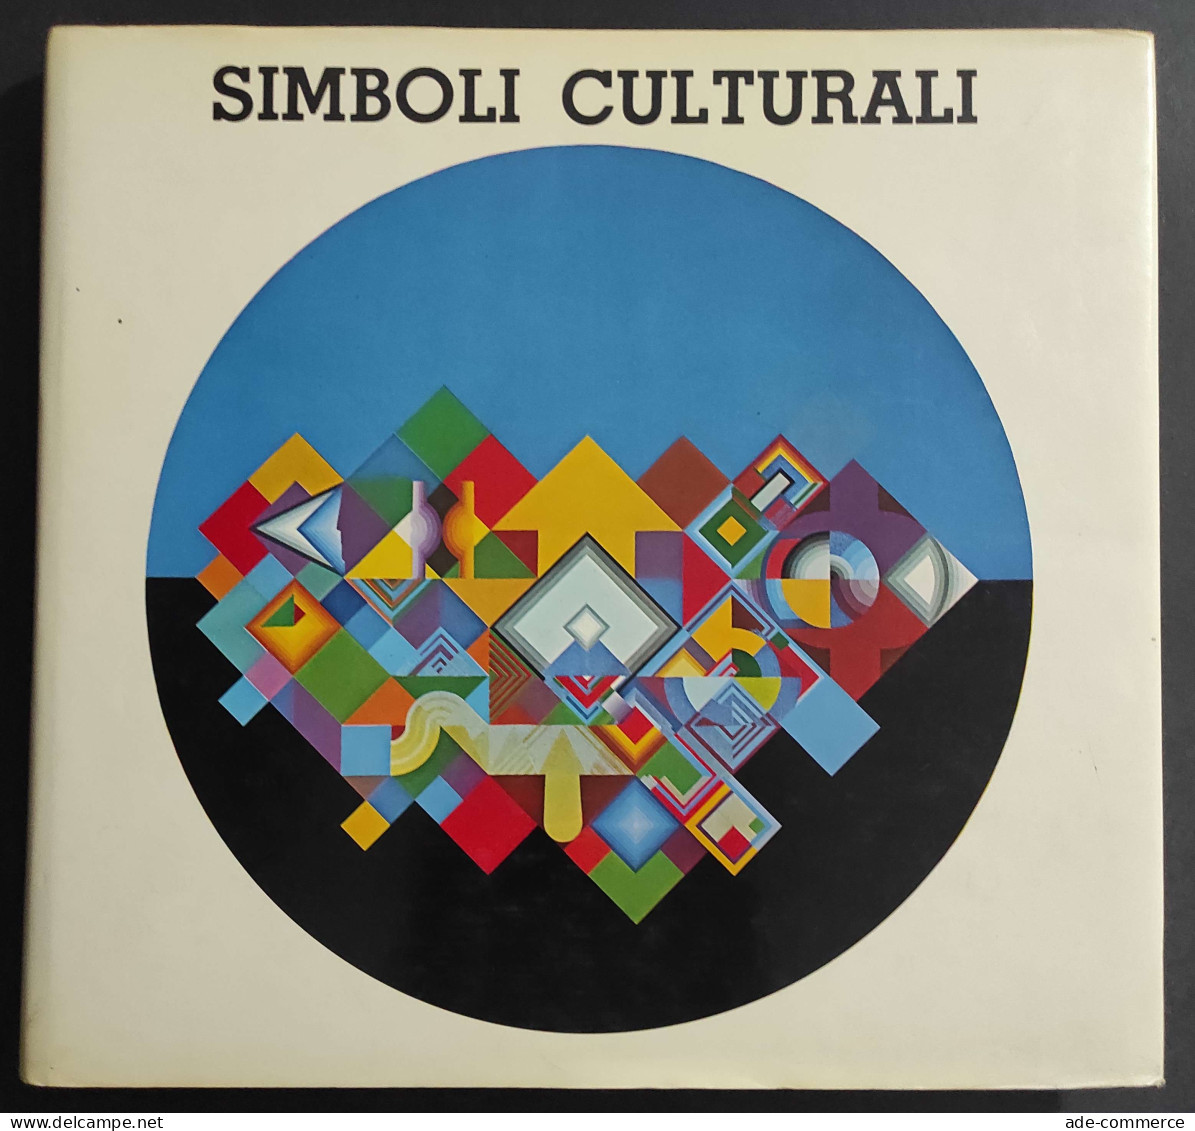 Simboli Culturali Nei Dipinti Di Tamburello - F. Passoni - Ed. Brixia - 1978                                             - Arts, Antiquity